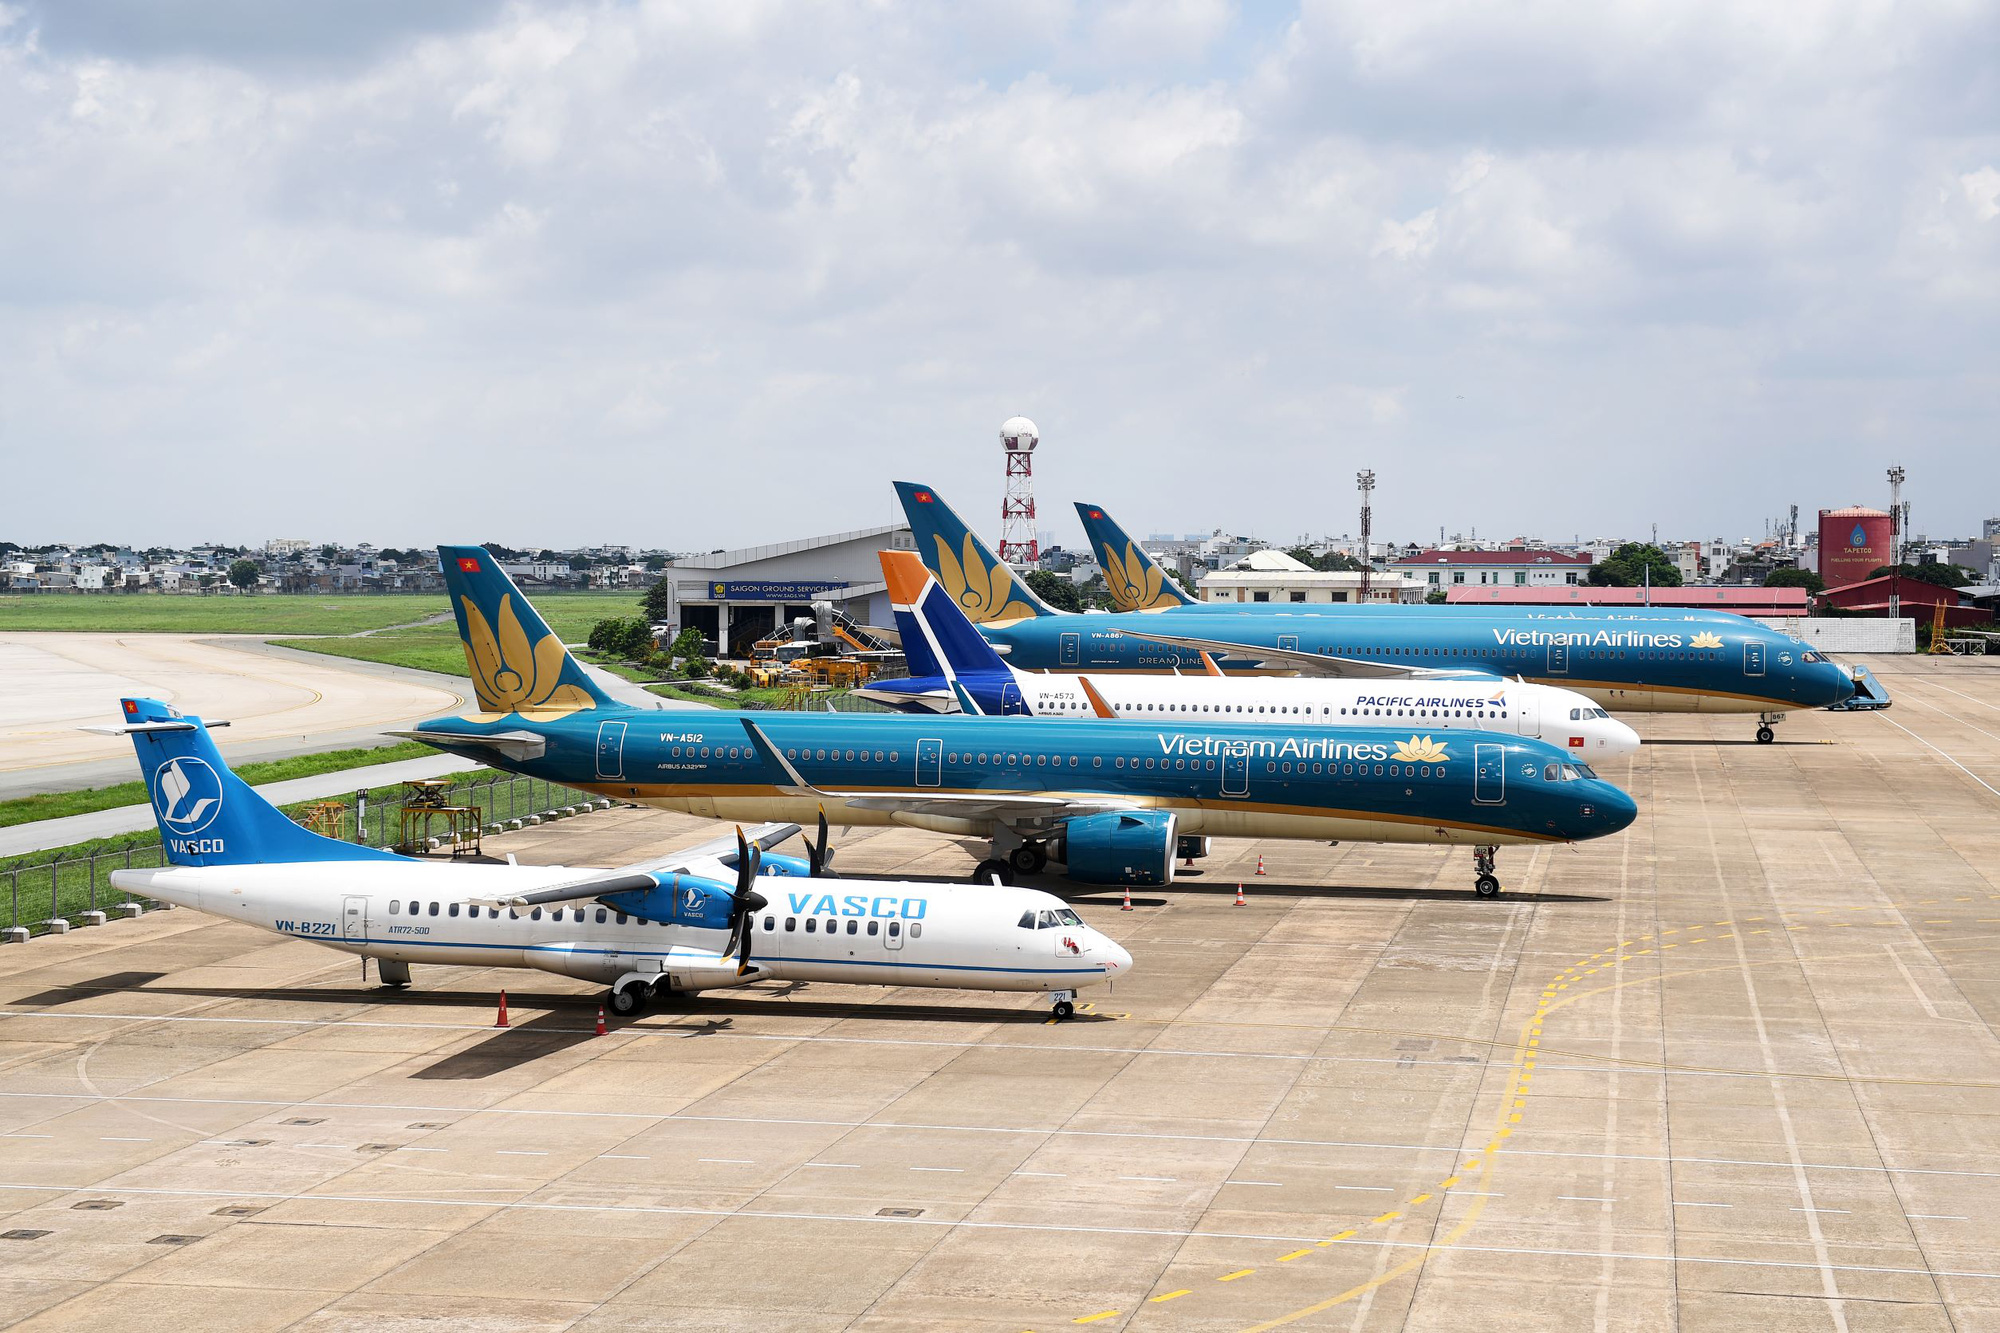 Cục Hàng không cấp phép cho Vietnam Airlines bay mở rộng trên 180 phút - Ảnh 1.